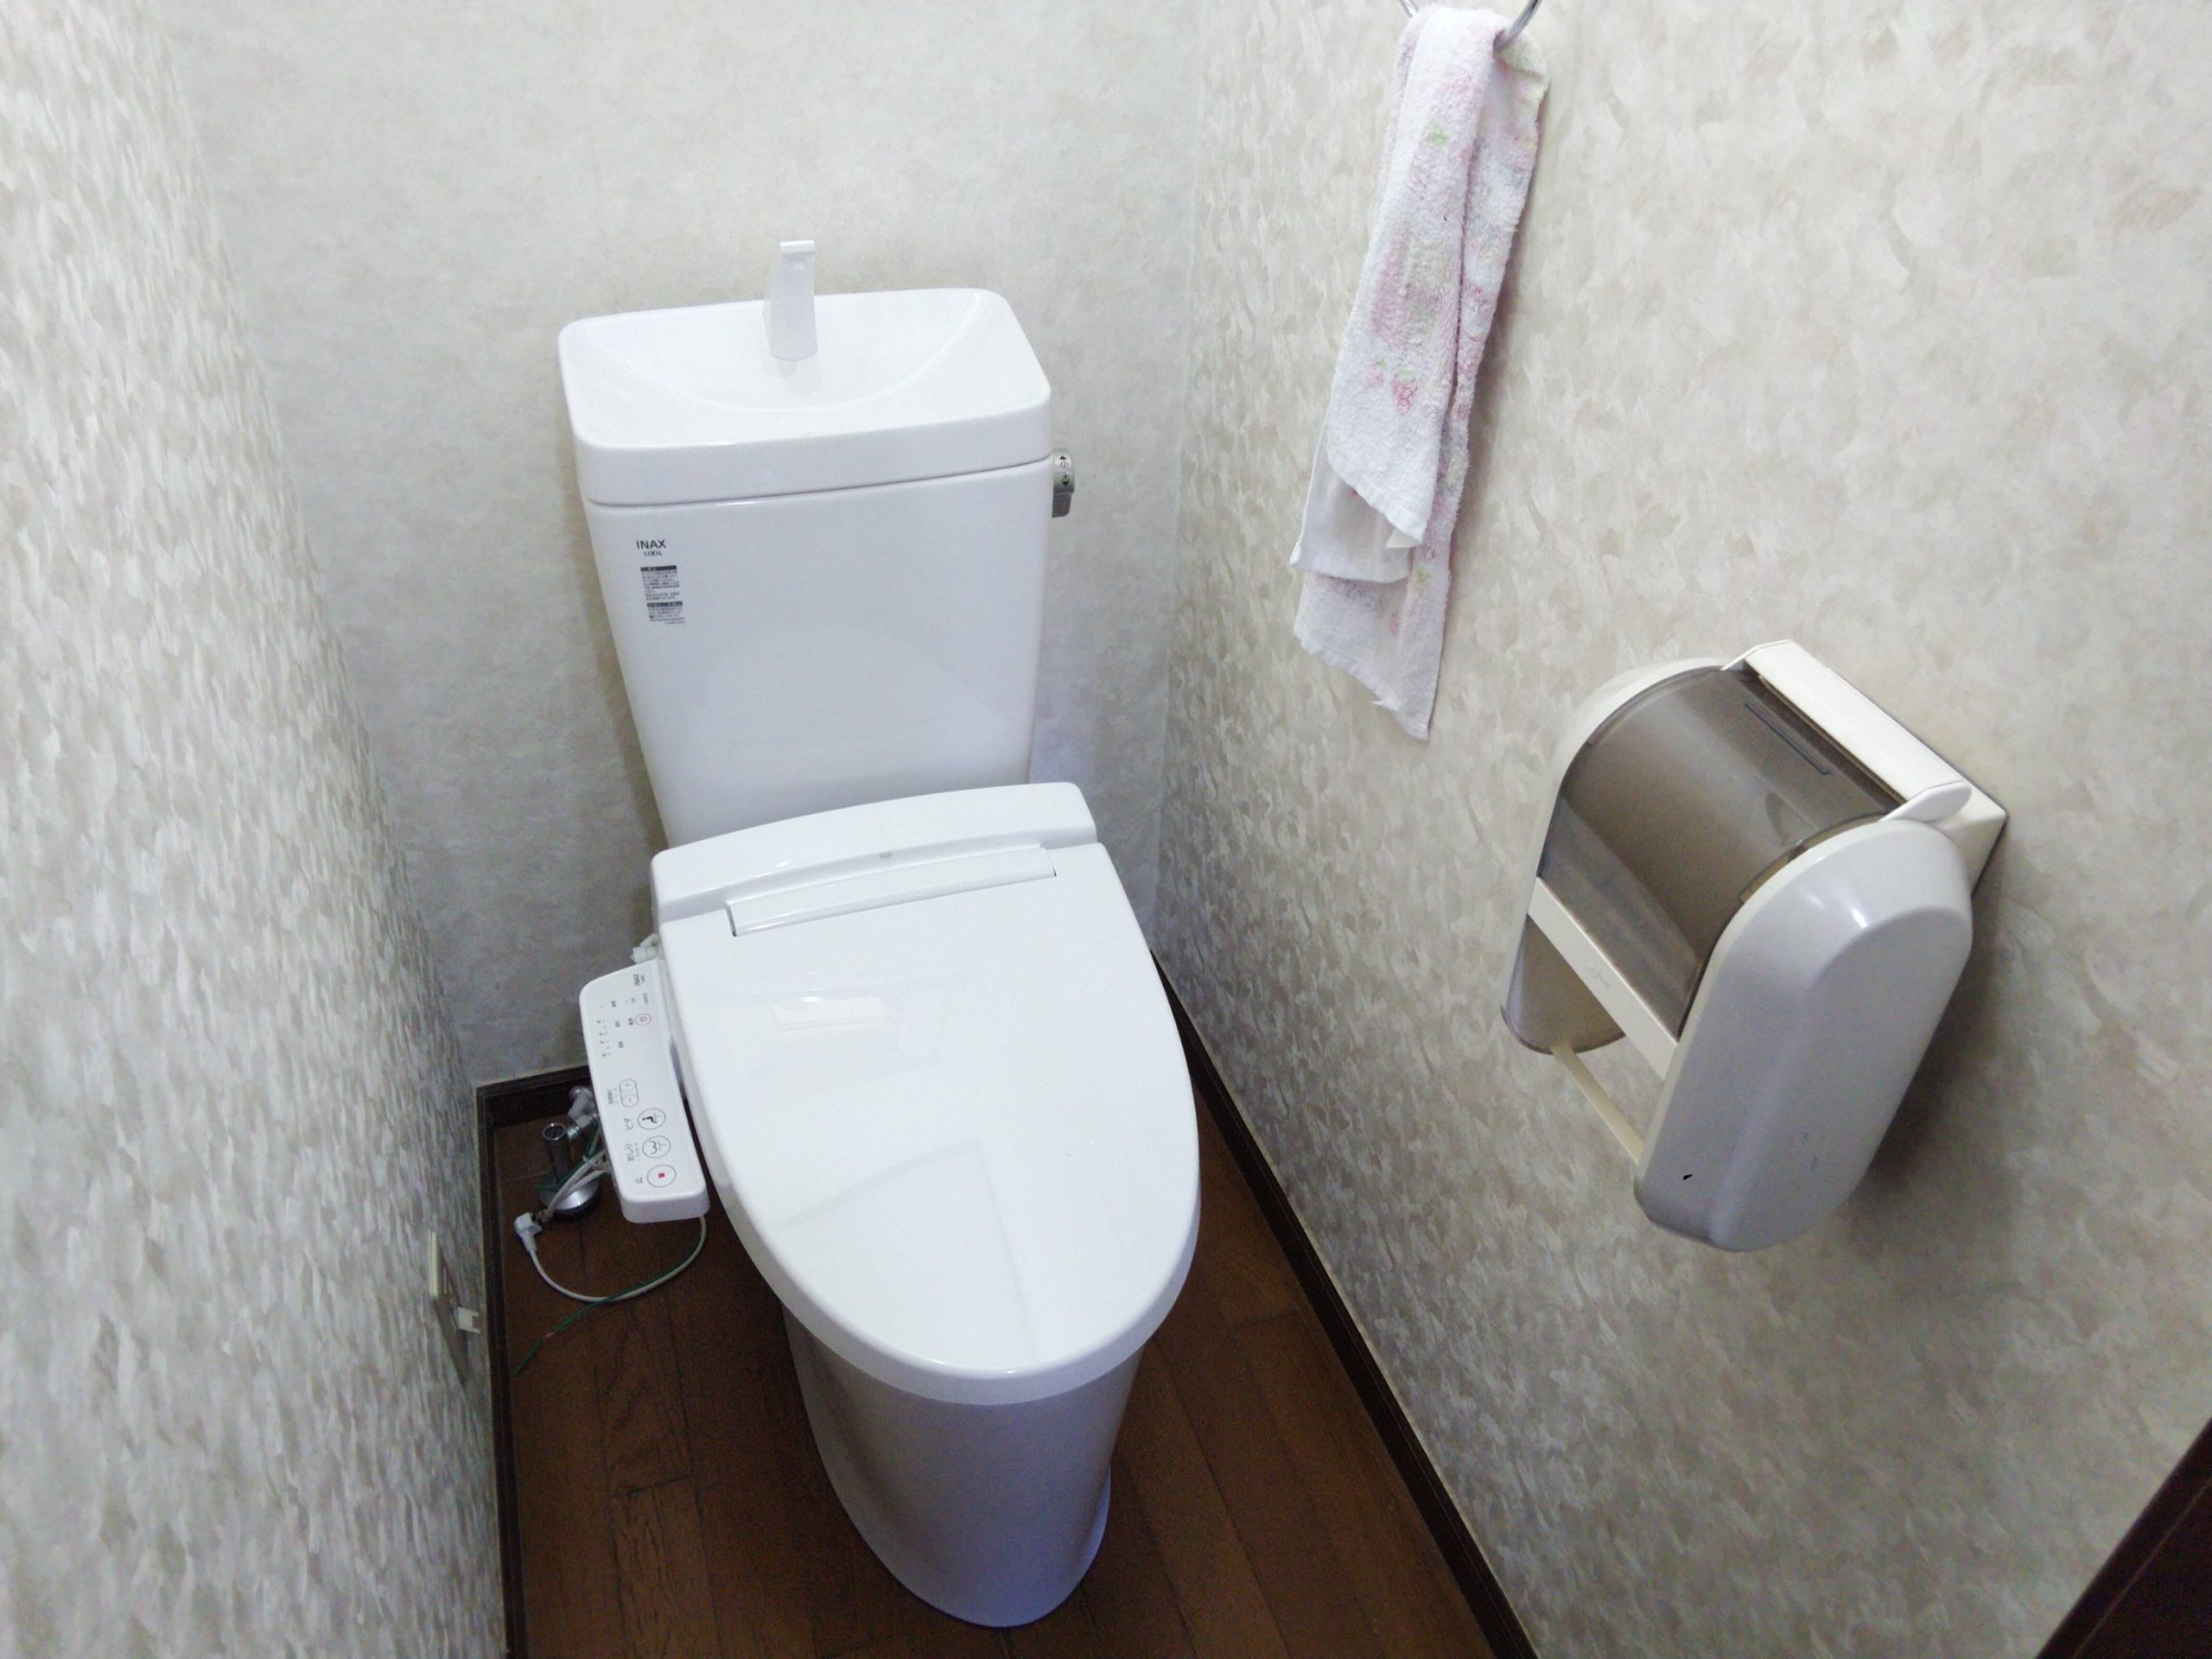 1階2階トイレ交換工事 アクア・アテンド さいたま市・水漏れ トイレつまり修理 漏水調査 給湯器